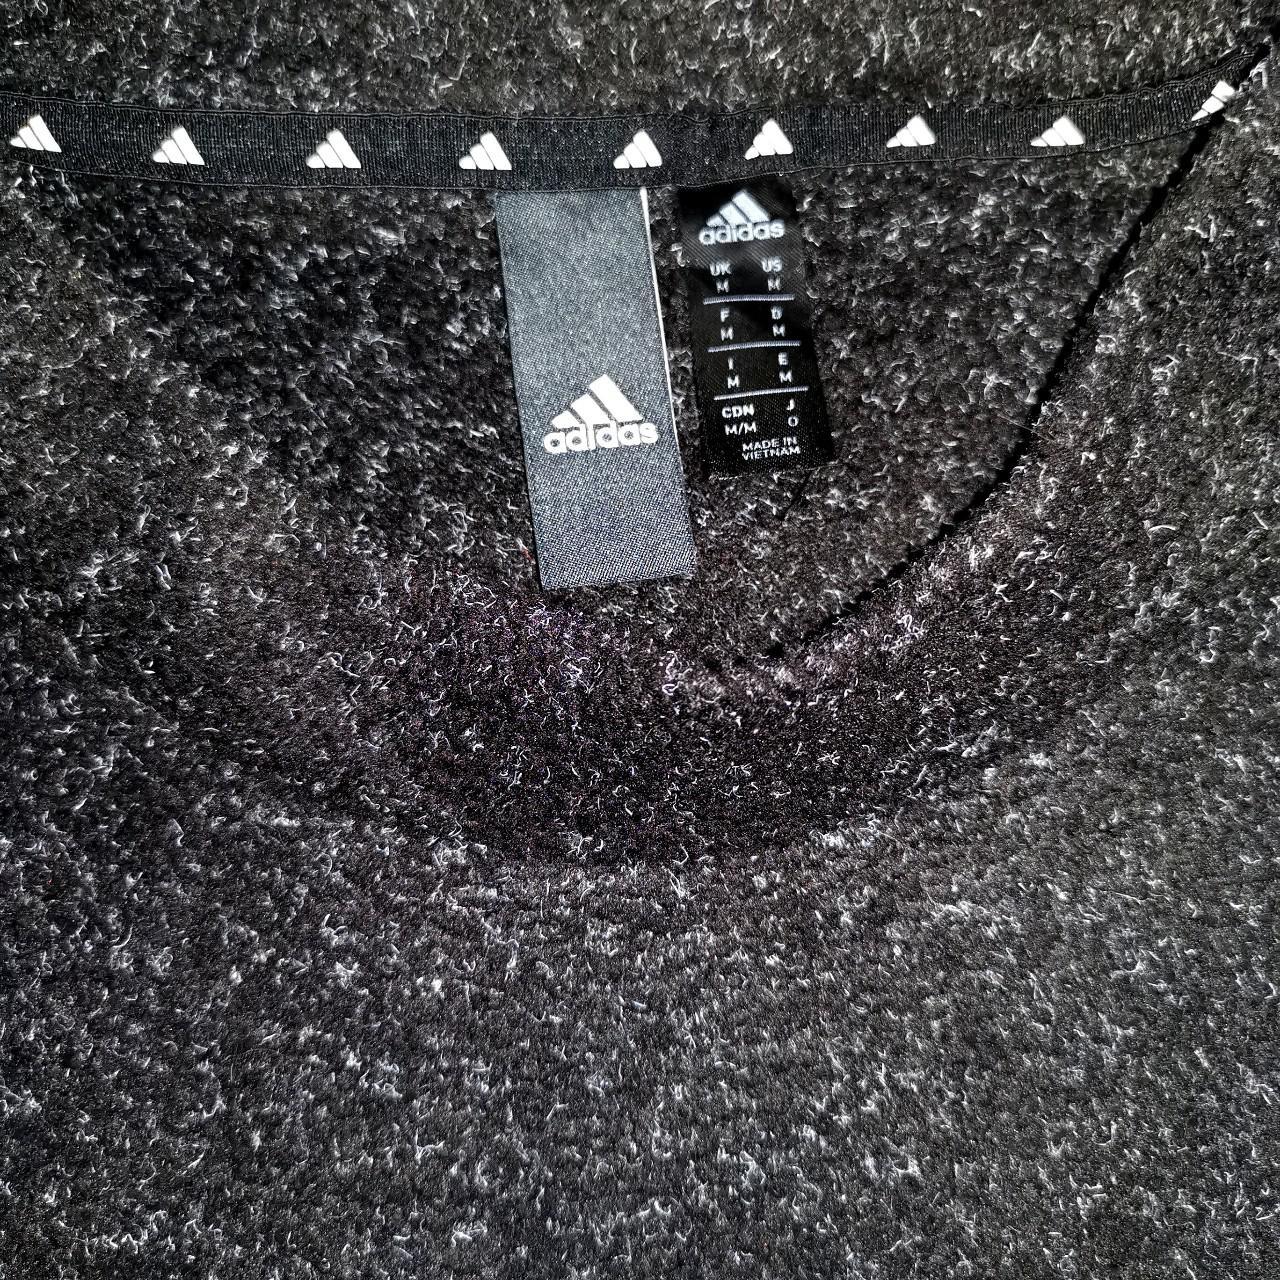 Adidas sample jumper in dark grey with big applique... - Depop